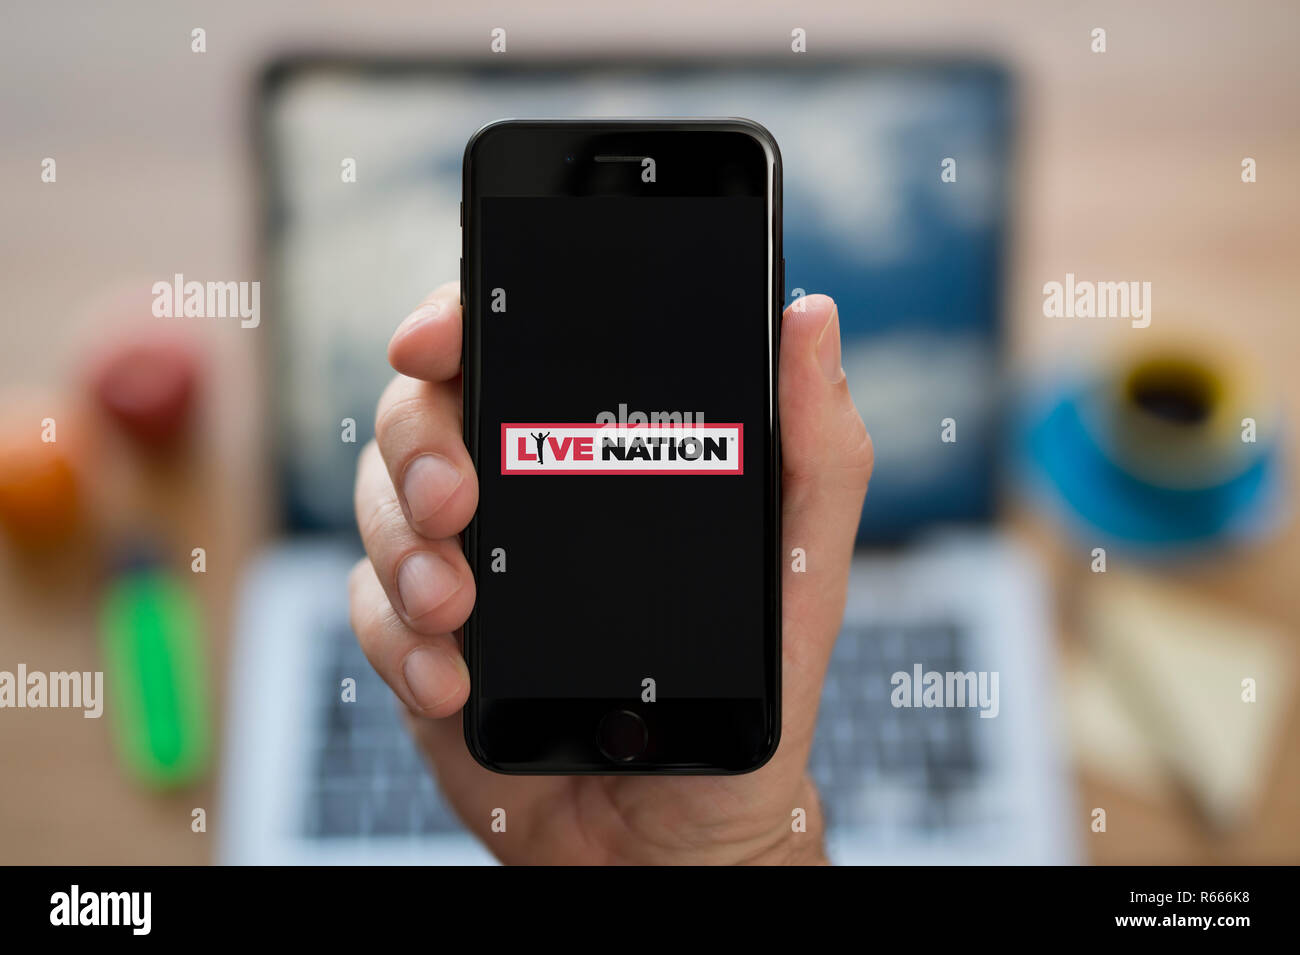 Ein Mann schaut auf seinem iPhone die zeigt die Live Nation logo, während saß an seinem Computer Schreibtisch (nur redaktionelle Nutzung). Stockfoto